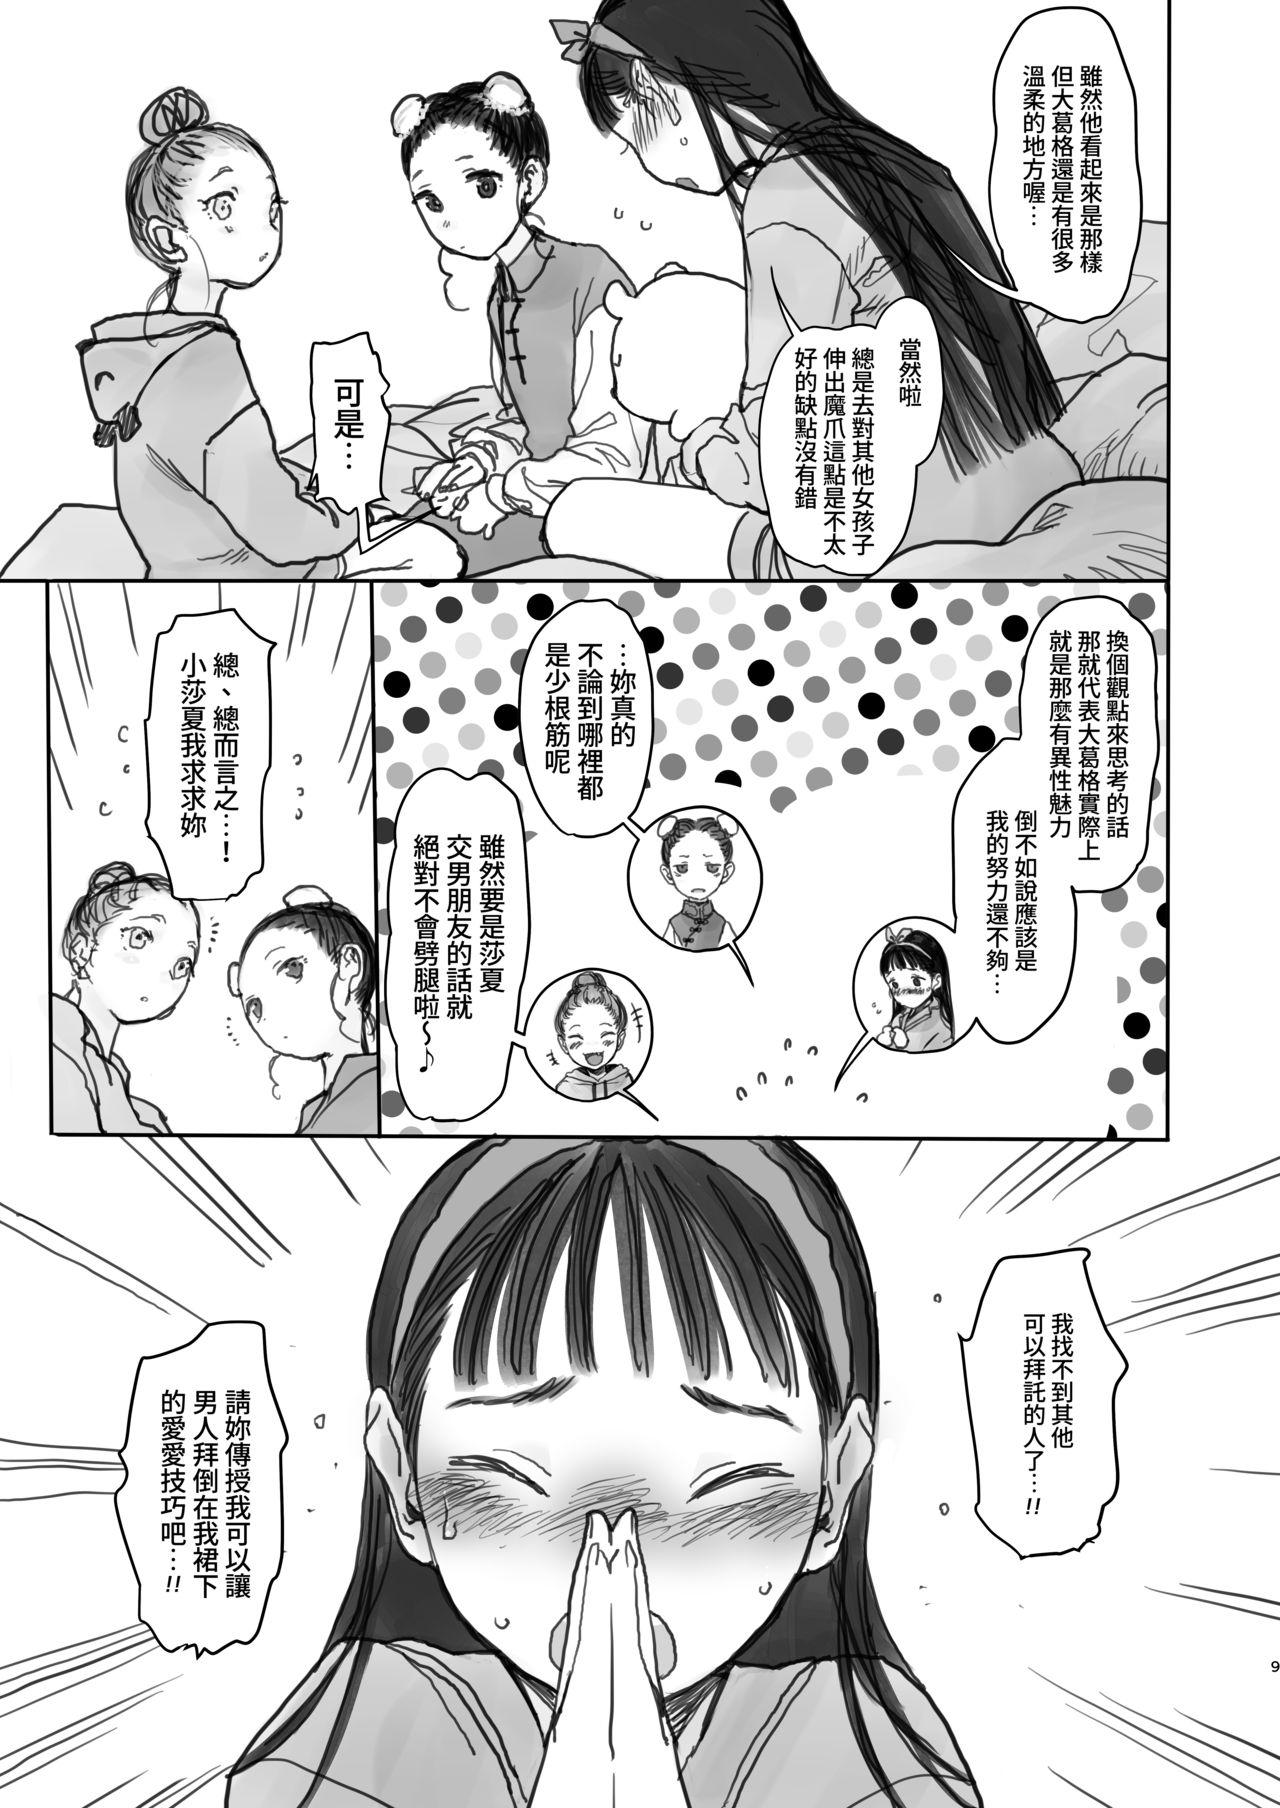 Blows Konoha-chan no Yuuutsu. - Original Staxxx - Page 10